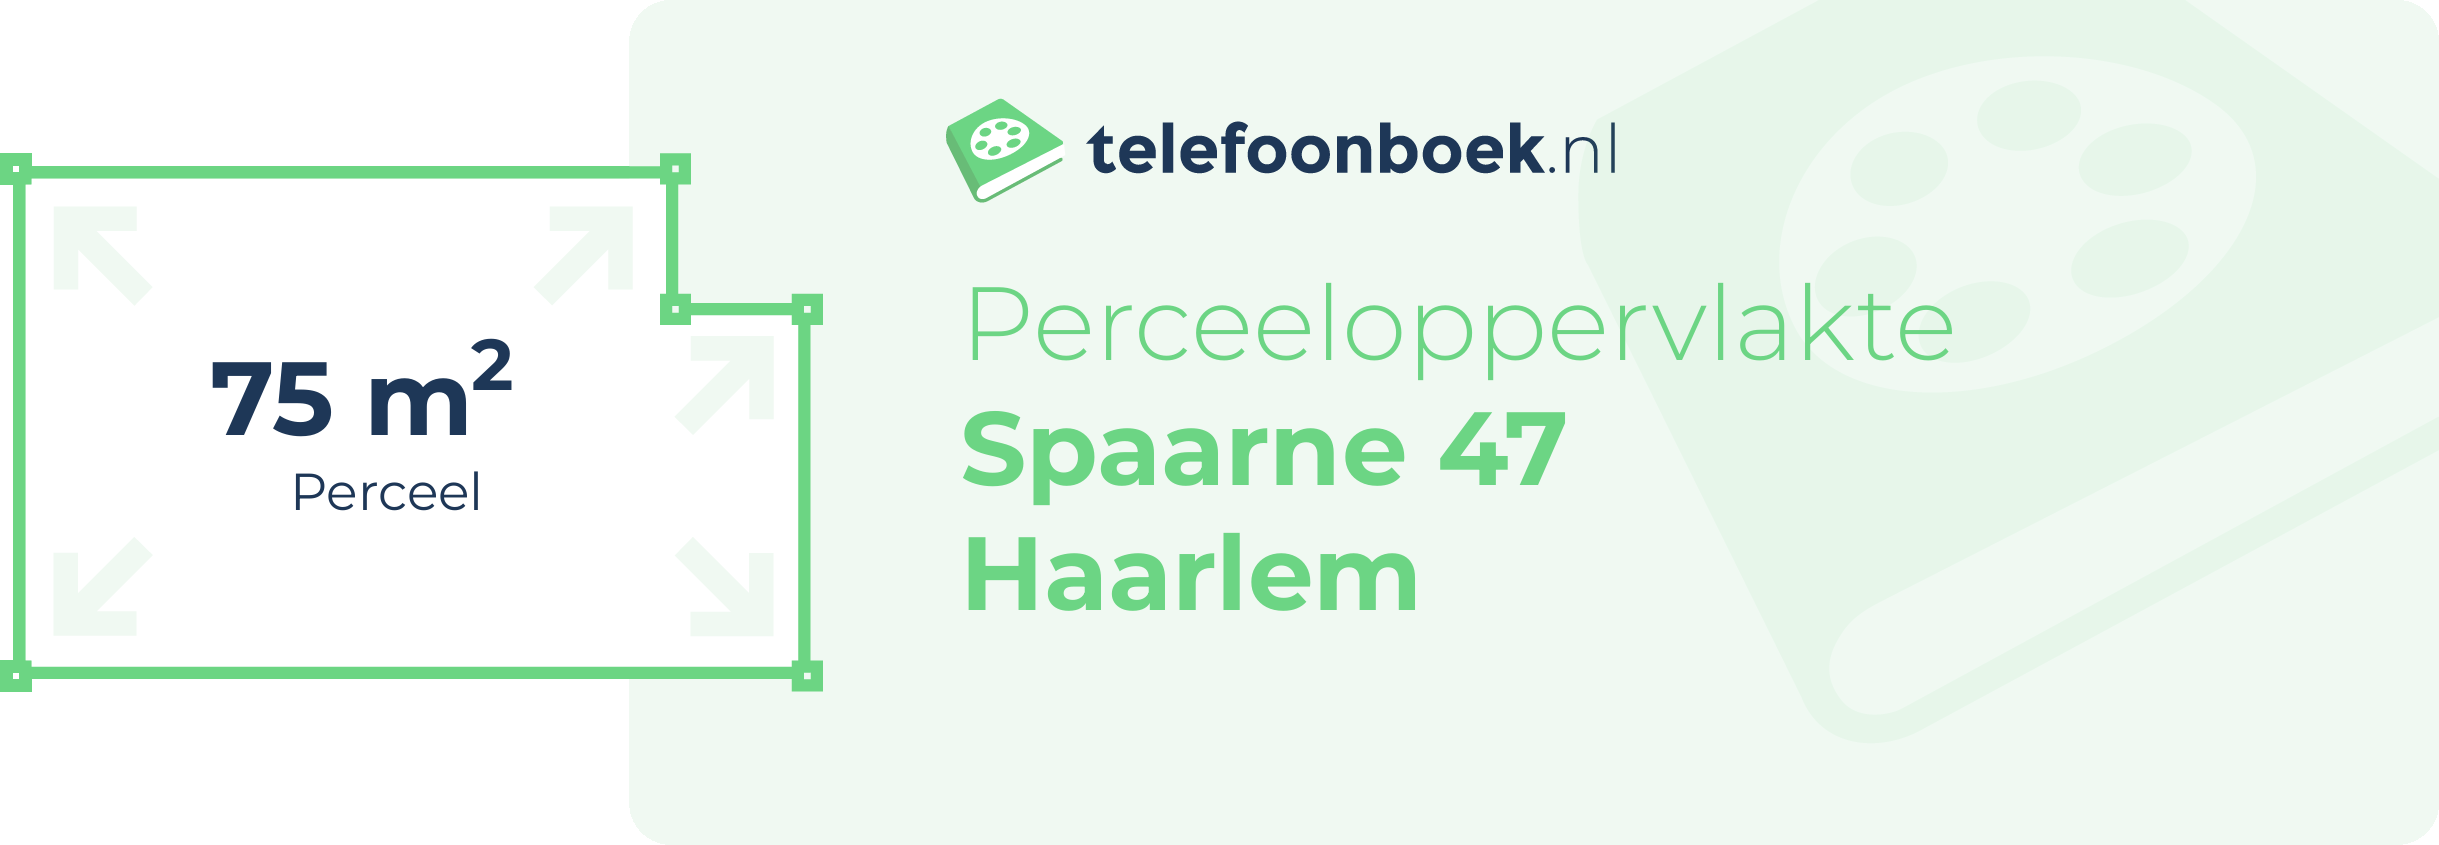 Perceeloppervlakte Spaarne 47 Haarlem